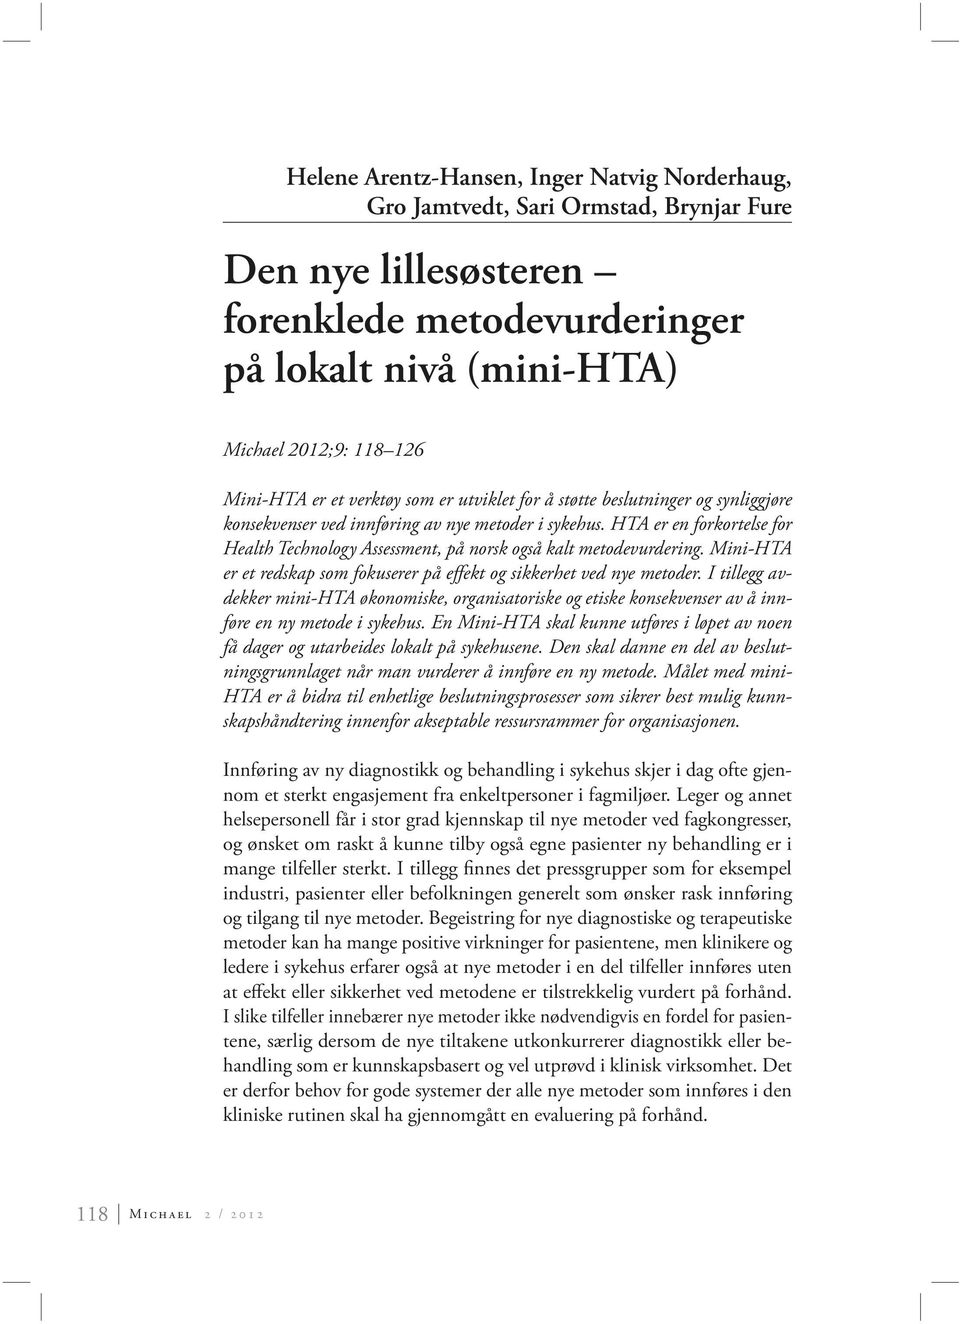 HTA er en forkortelse for Health Technology Assessment, på norsk også kalt metodevurdering. Mini-HTA er et redskap som fokuserer på effekt og sikkerhet ved nye metoder.